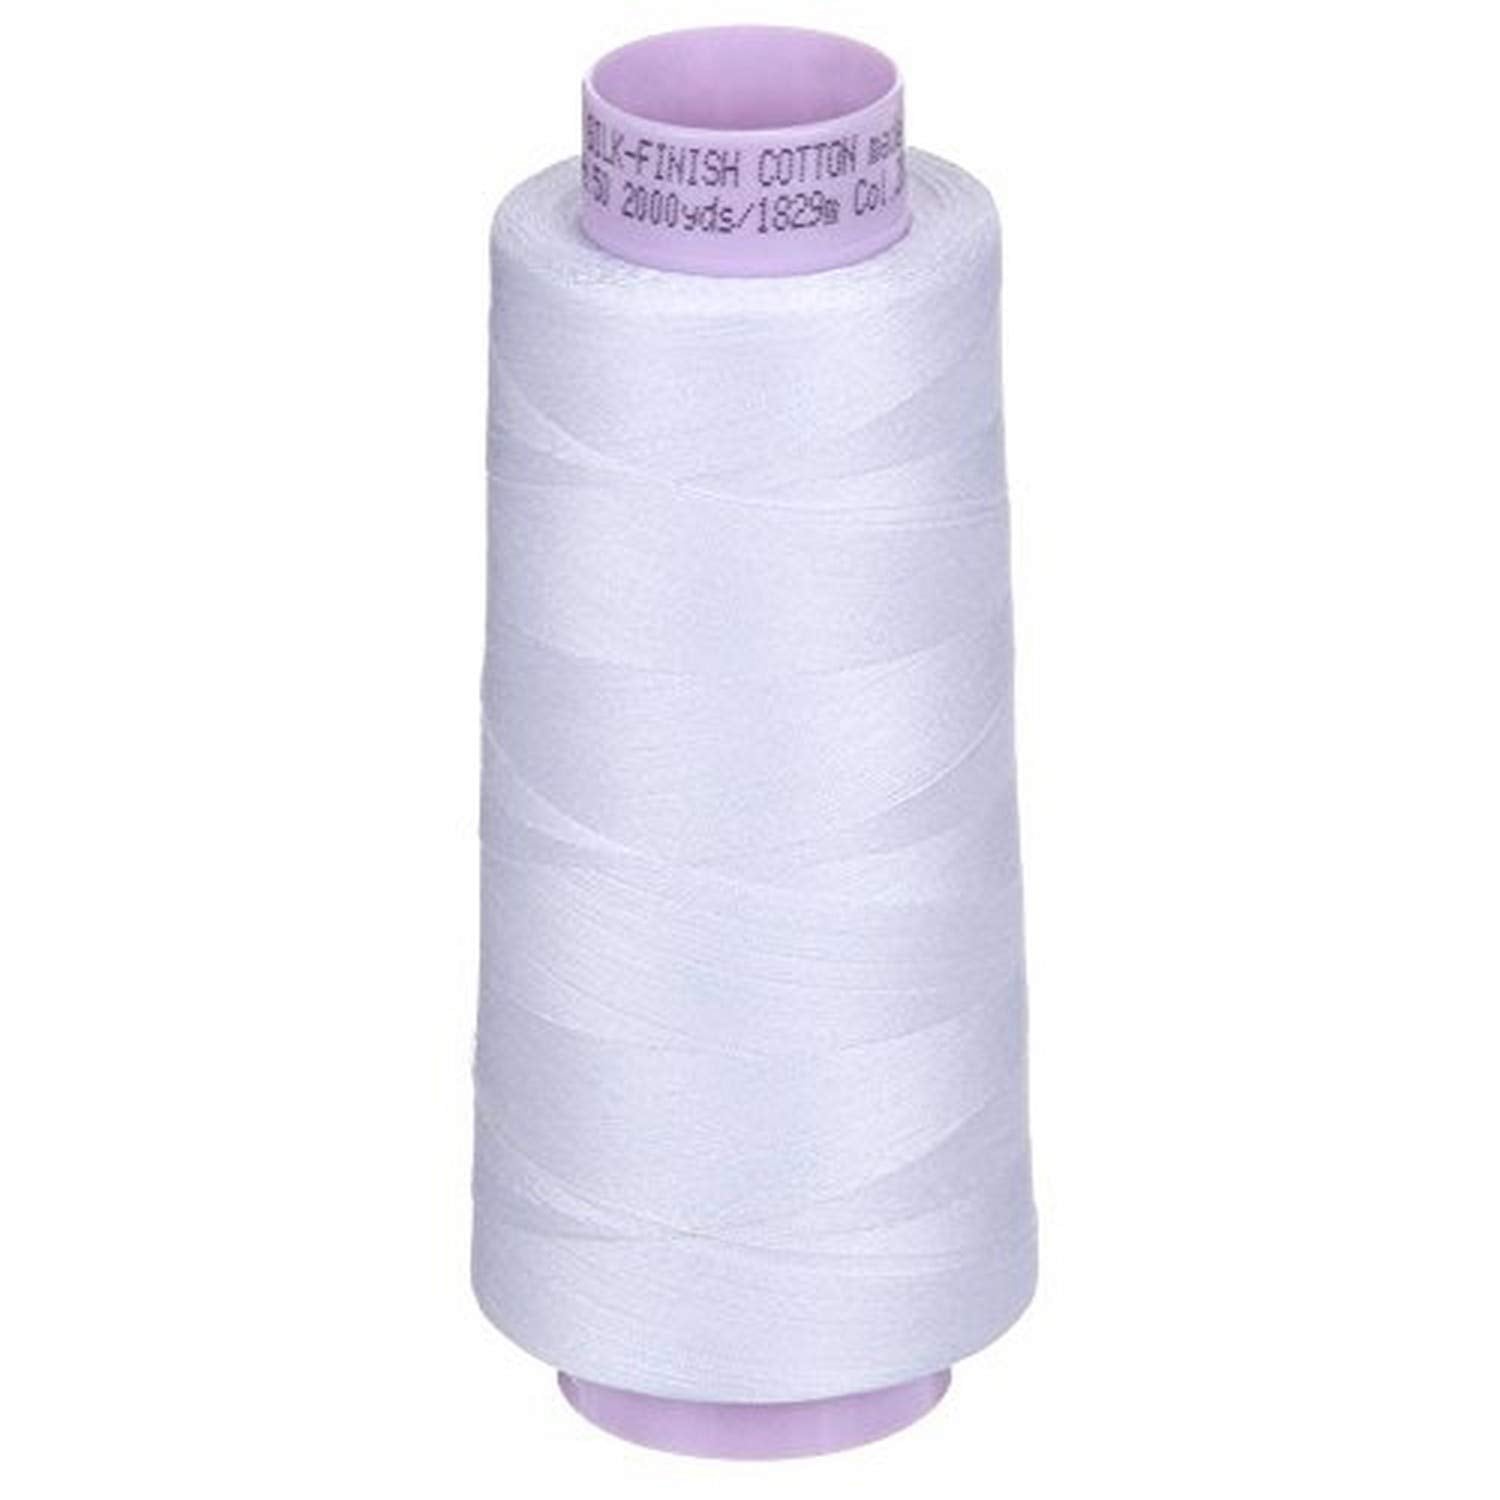 The Thread Exchange, Inc.: Mettler Silk-Finish Cotton Thread